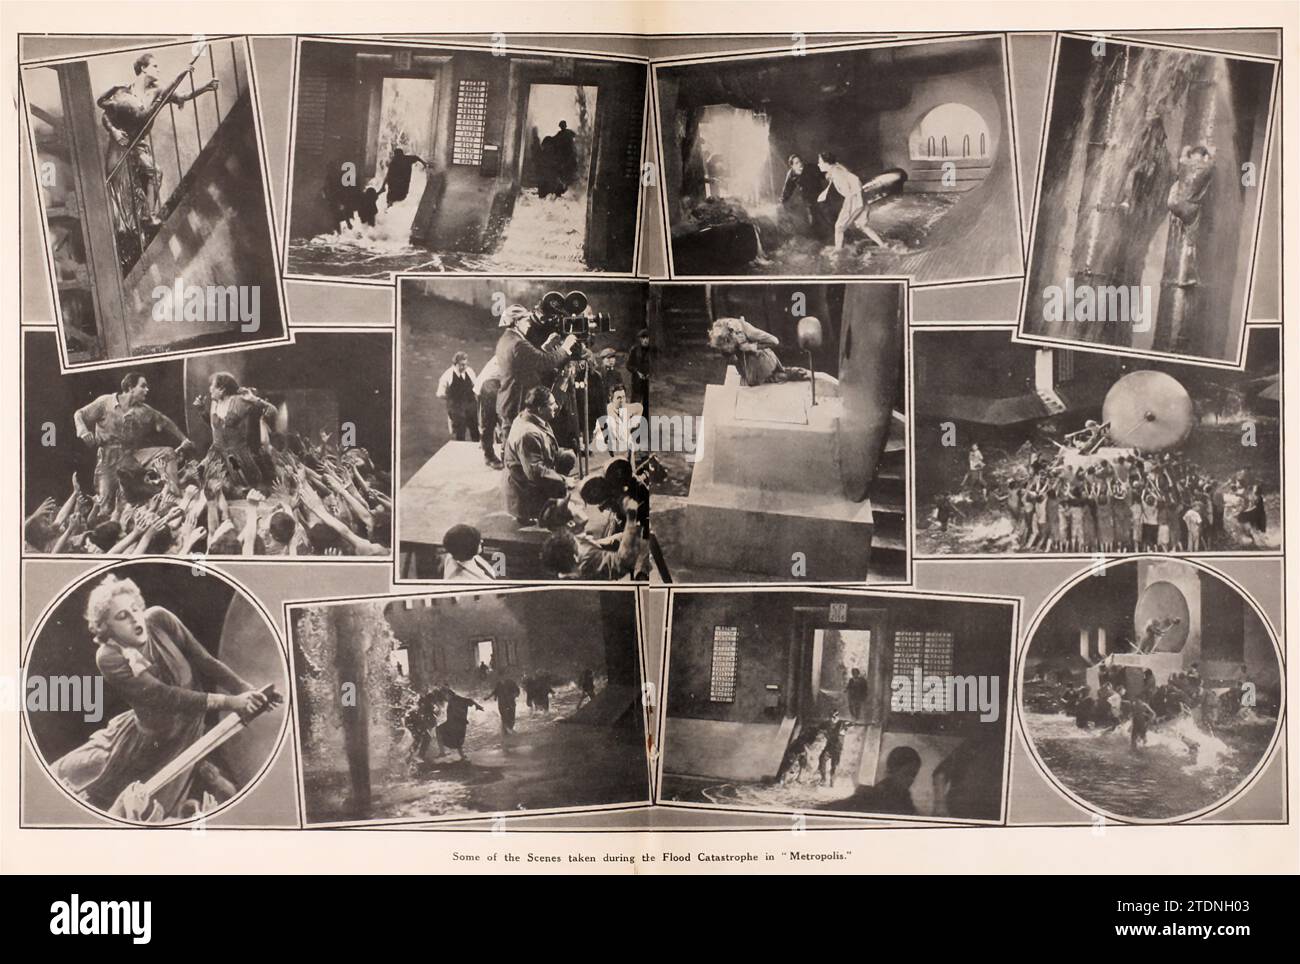 Metropolis est un 1927 film muet de science-fiction allemand réalisé par Fritz Lang et écrit par Thea von Harbou en collaboration avec Lang du roman de von Harbou de 1925 du même nom (qui a été écrit intentionnellement comme un traitement). Il met en vedette Gustav Fröhlich, Alfred Abel, Rudolf Klein-Rogge et Brigitte Helm. Erich Pommer l'a produit dans les studios Babelsberg pour Universum film A.G. (UFA). Le film muet est considéré comme un film pionnier de science-fiction, étant parmi les premiers longs métrages de ce genre. Le tournage s'est déroulé sur 17 mois en 1925-26 Banque D'Images